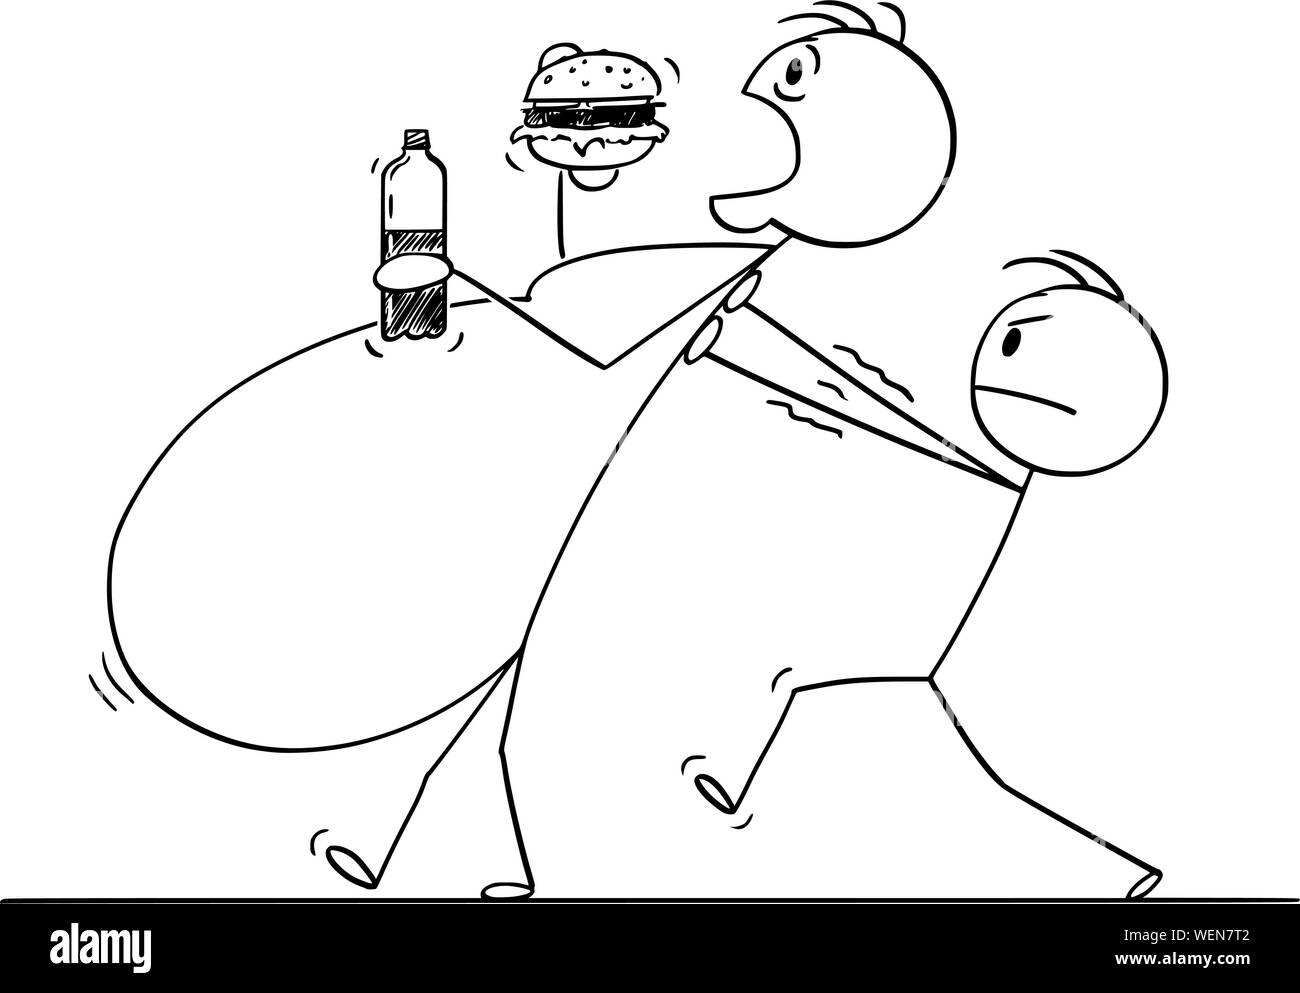 Vektor cartoon Strichmännchen Zeichnung konzeptuelle Darstellung von Übergewicht, krankhafte Fettleibigkeit oder Fat man Essen ungesundes Essen während ein anderer Mann hilft ihm zu gehen. Stock Vektor